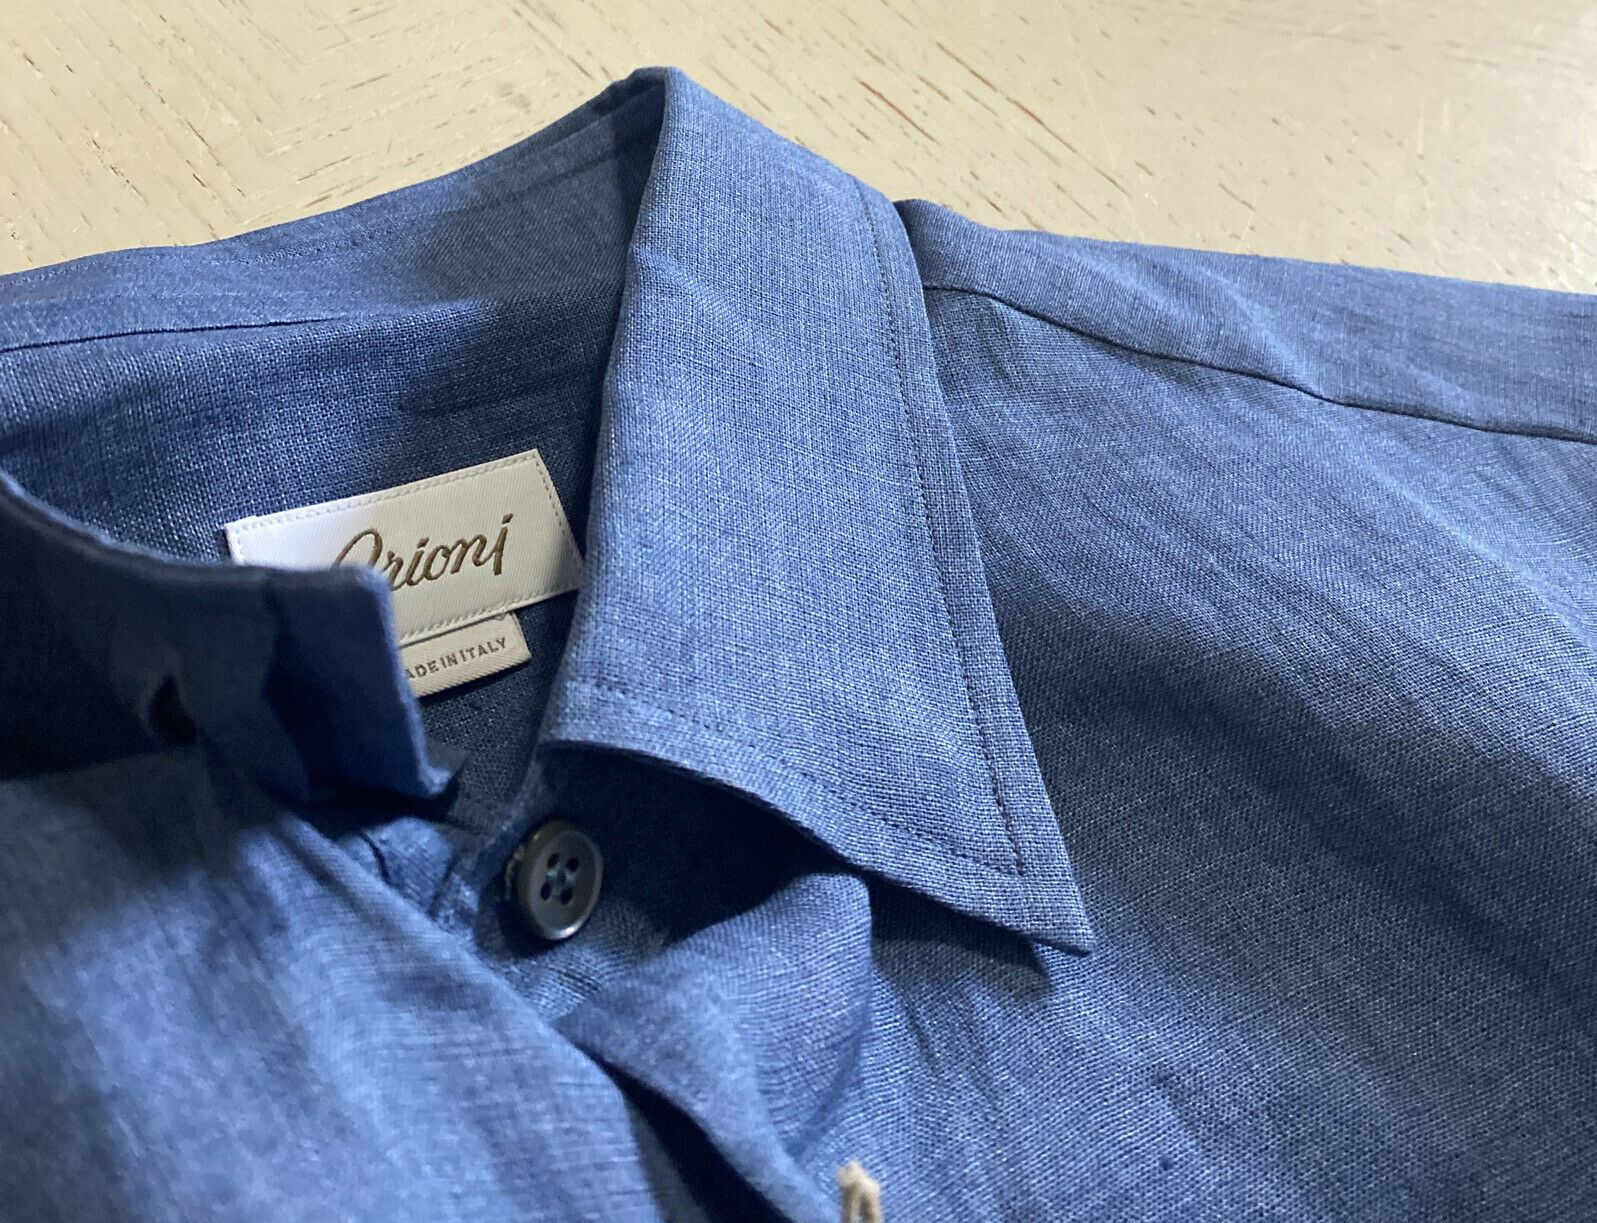 Neu mit Etikett: 500 $ Brioni Herren-Leinenhemd mit sortierten Ärmeln, Blau, Größe L, Italien